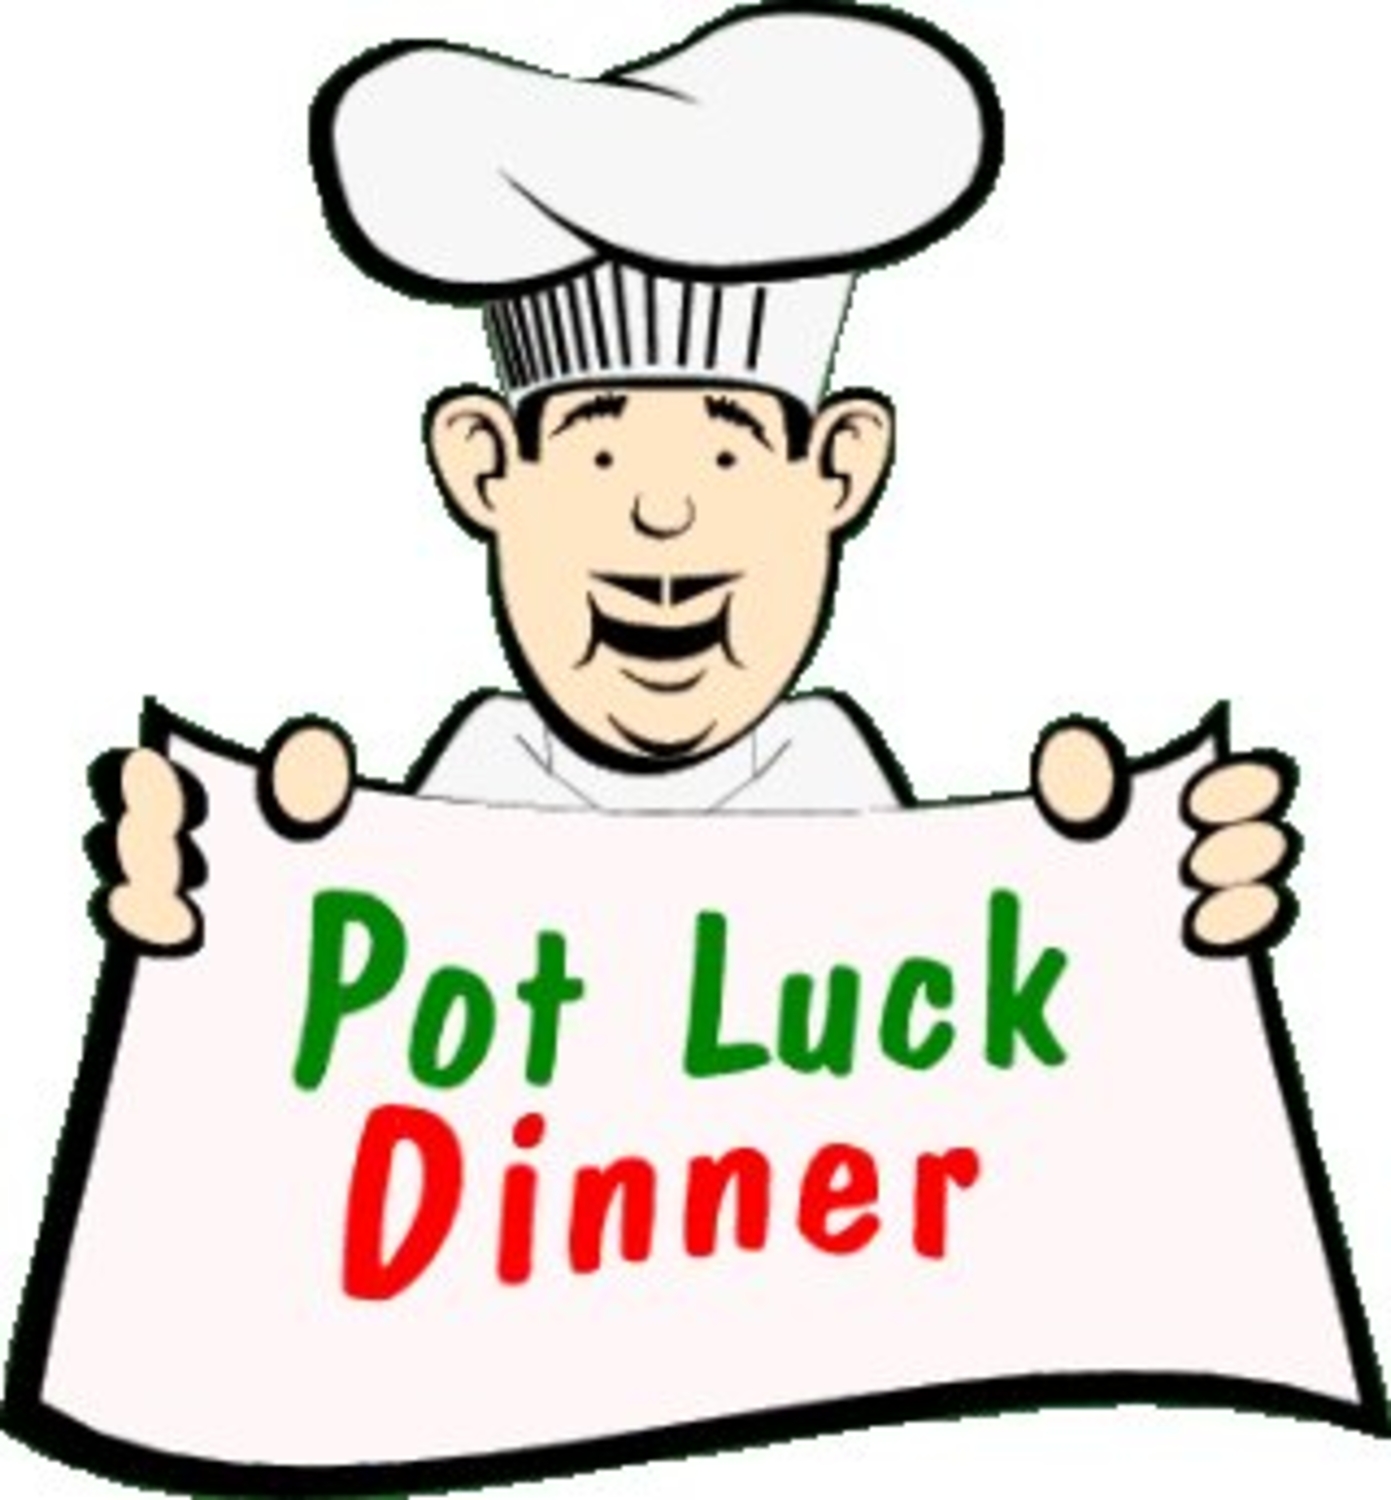 Pot Luck Dinner